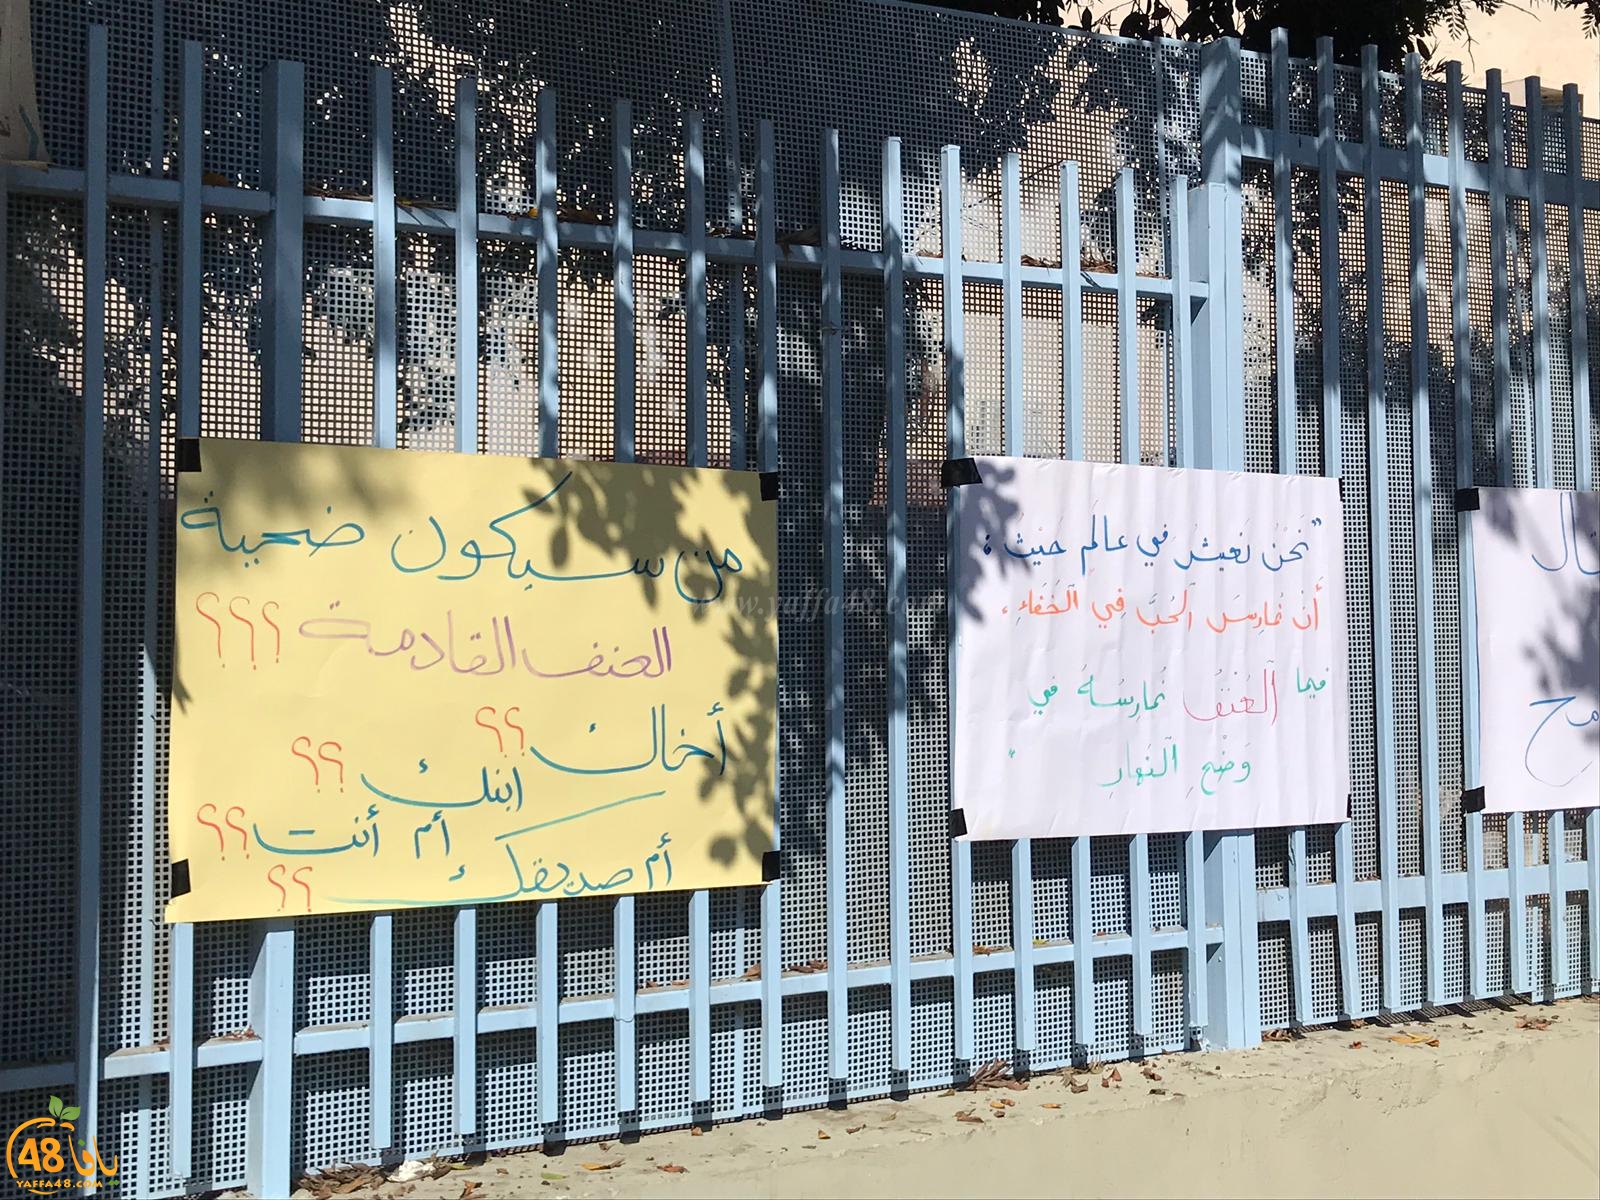  يافا: المدرسة الثانوية الشاملة تُنظم فعاليات ضد العنف وجرائم القتل